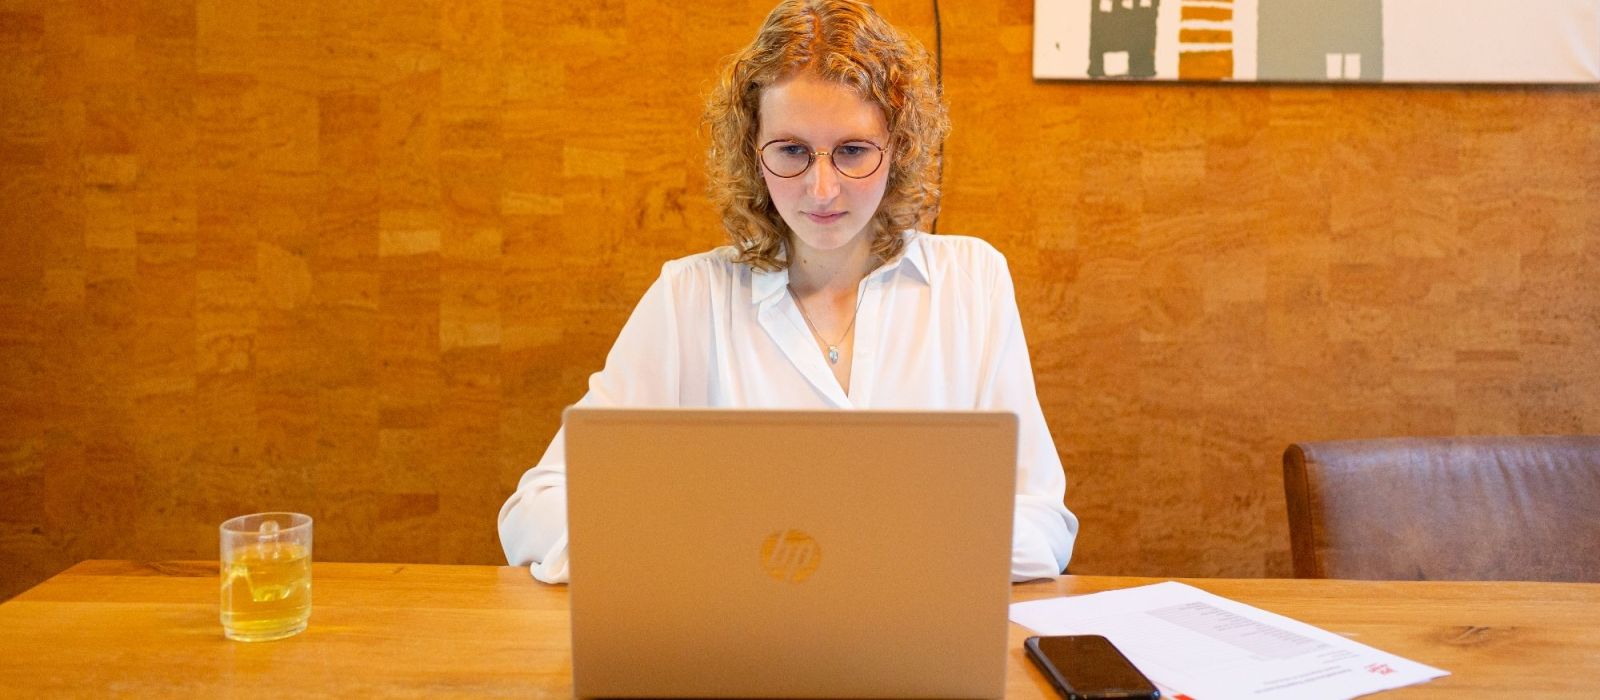 Medewerker van Ipse de Bruggen achter een laptop